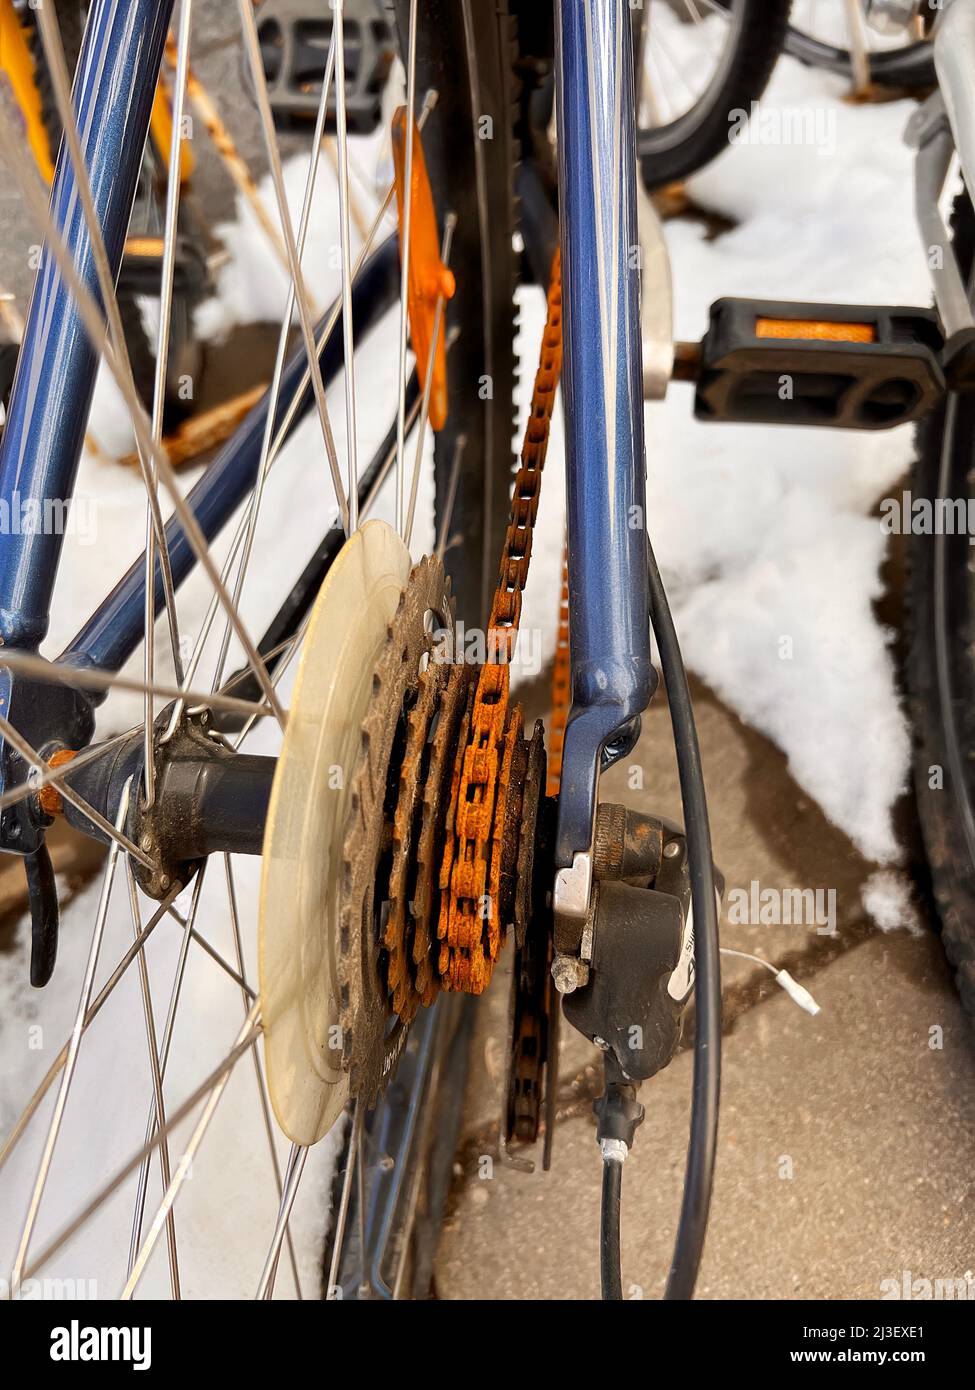 Blue Bike ist den ganzen Winter draußen gewesen und ist kaputt gegangen.  Rostige Fahrradkette hängt an Kettenrad und Zahnrad Stockfotografie - Alamy